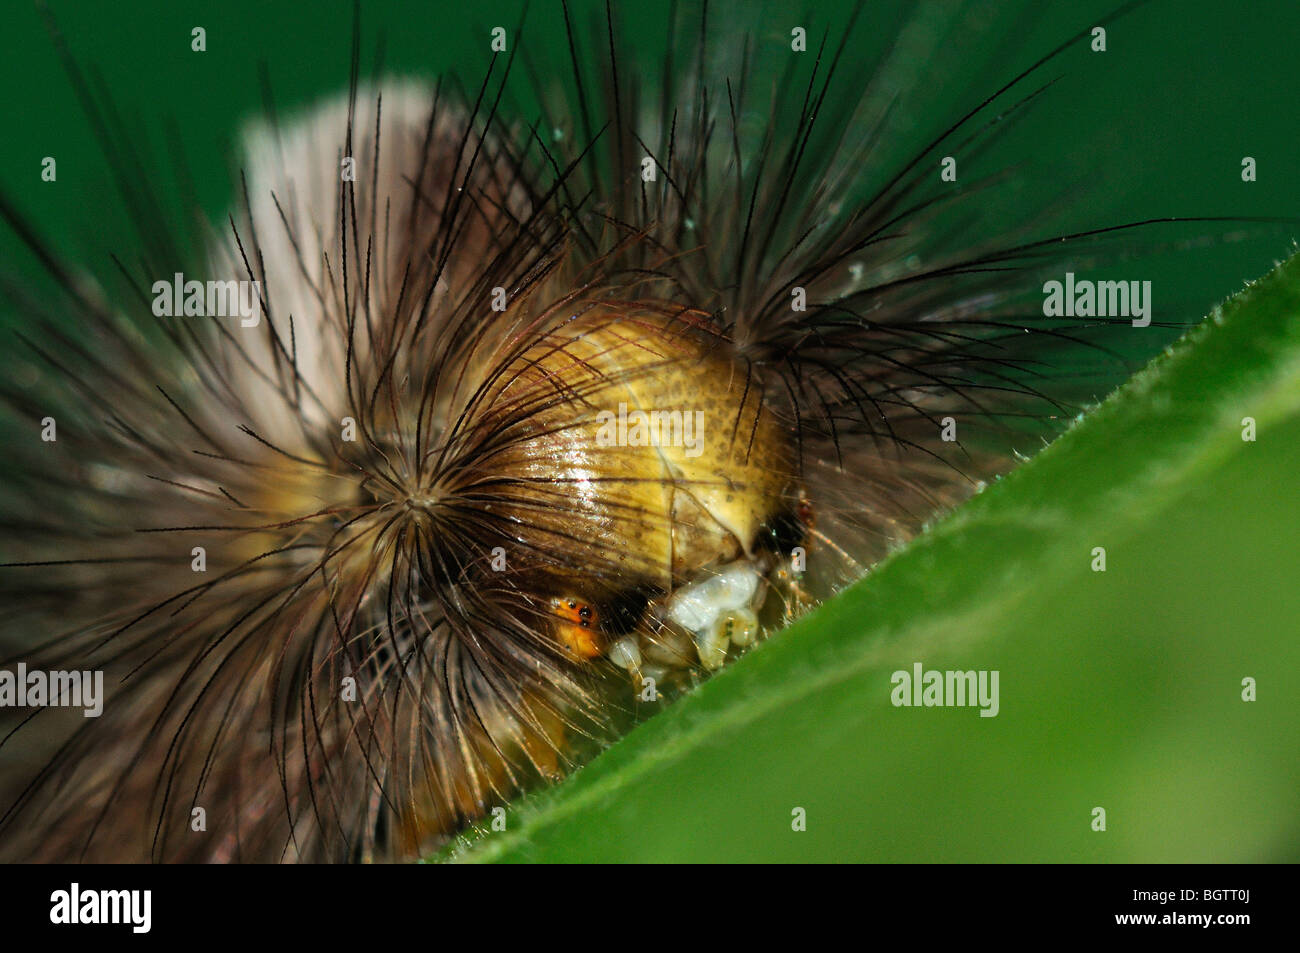 Houppes pâle (Calliteara pudibunda) gros plan de la tête de Caterpillar, il se nourrit de feuilles de tilleul, l'Oxfordshire, UK. Banque D'Images